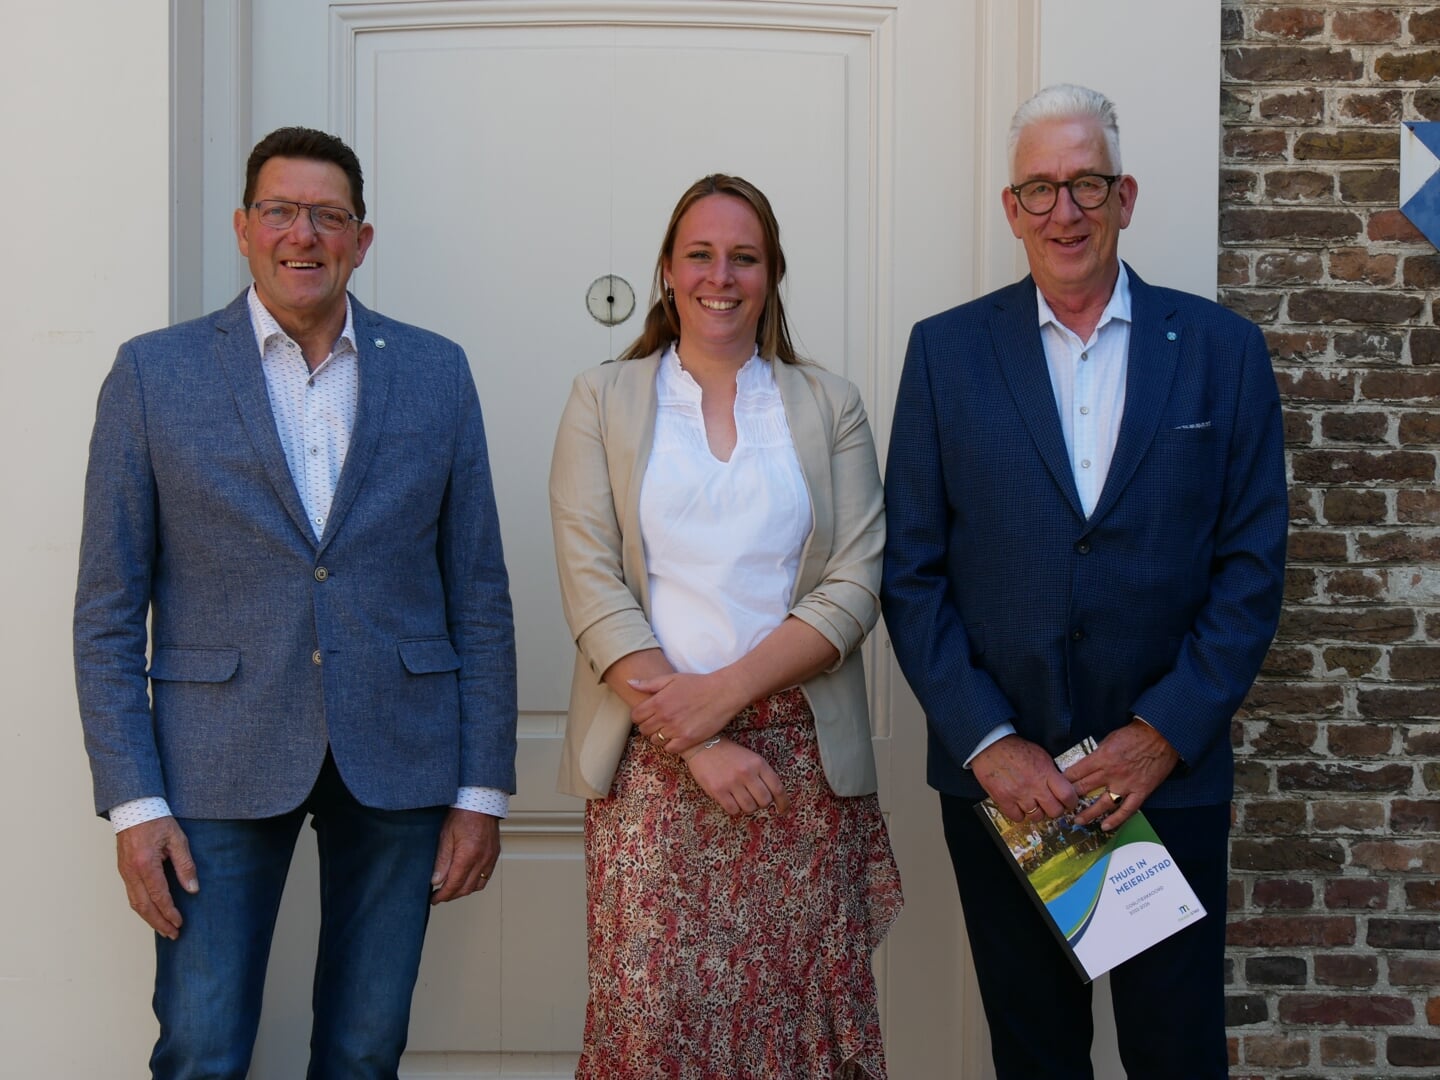 De fractievoorzitters van de partijen in het college: Rien Verhagen (CDA), Miranda Kerkhof - Ulehake (HIER) en Arie de Zwart (PvdA-GroenLinks). Wilma Wagenaars (VVD) ontbreekt in verband met werk.